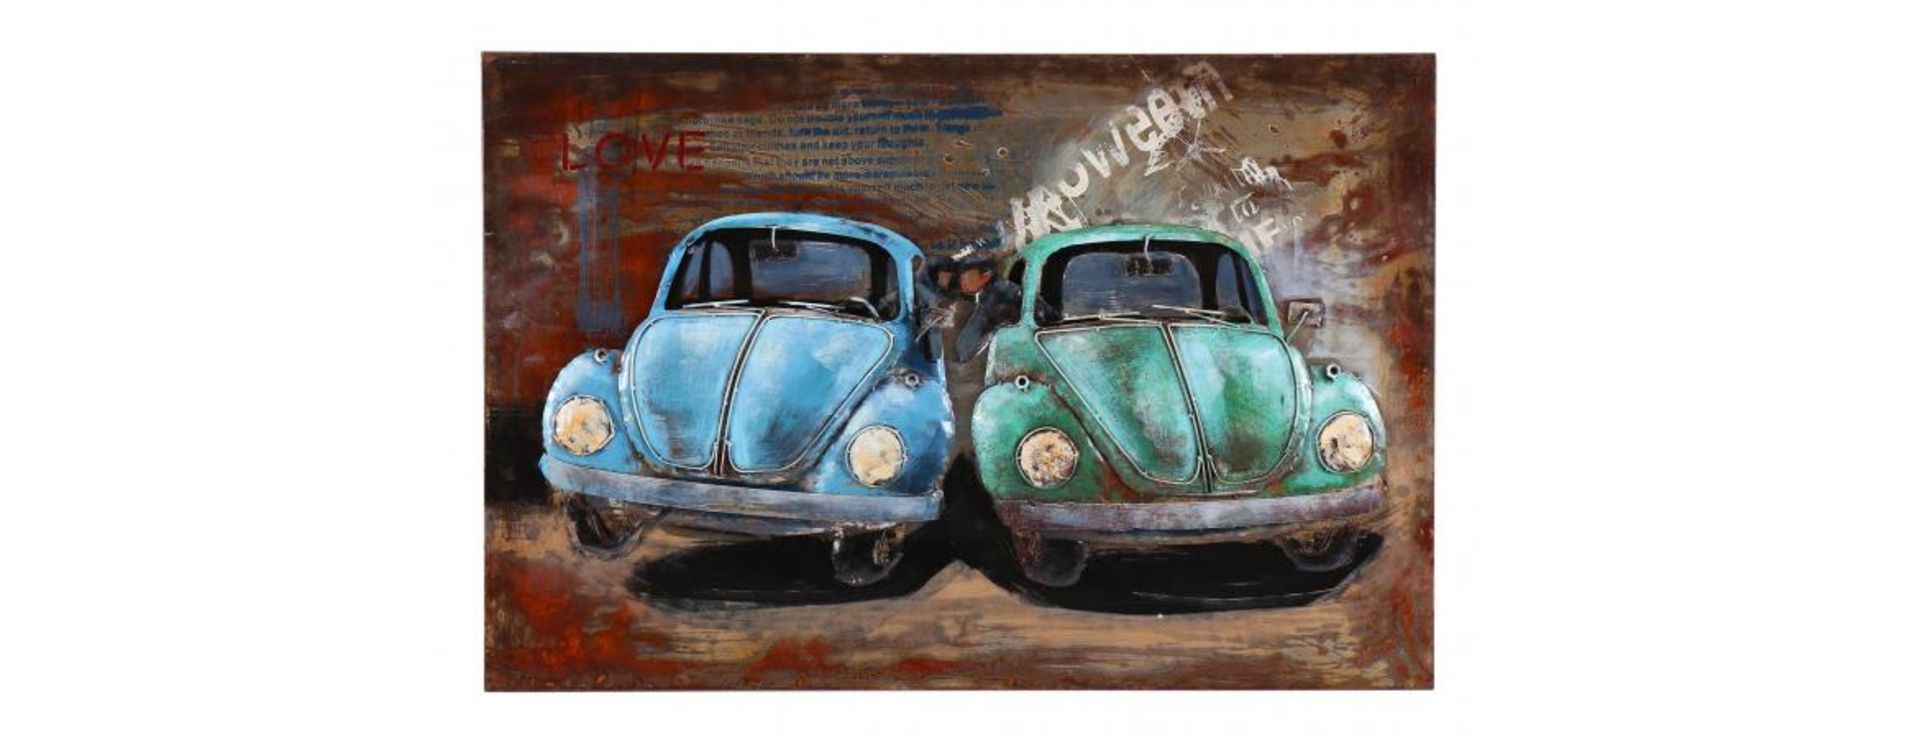 3D Metal VW Beetles Painting